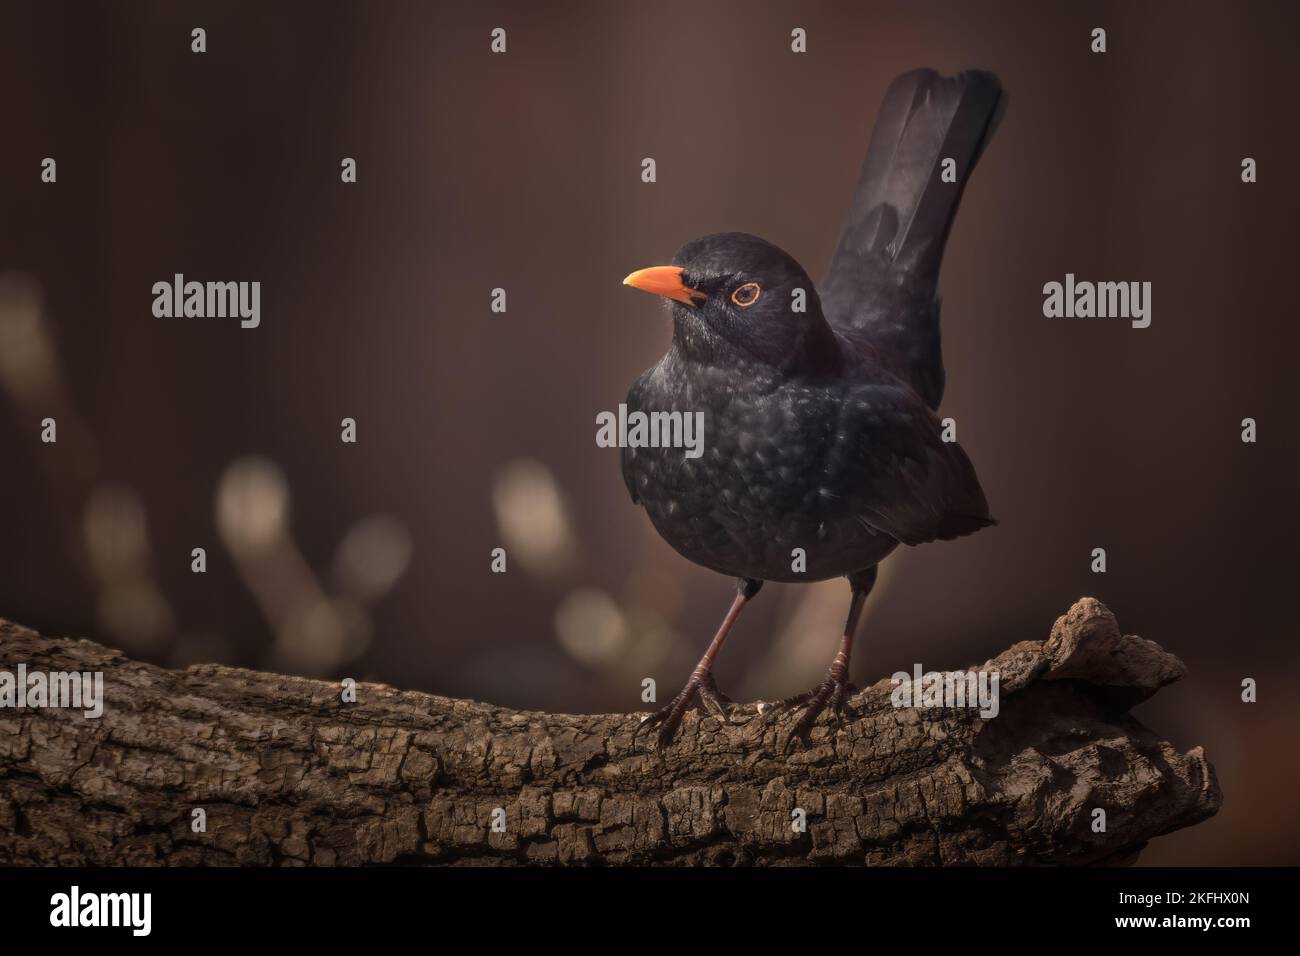 Blackbird arroccato su un ramo. Sfondo marrone con spazio per le parole. Nome latino Turdus merula Foto Stock